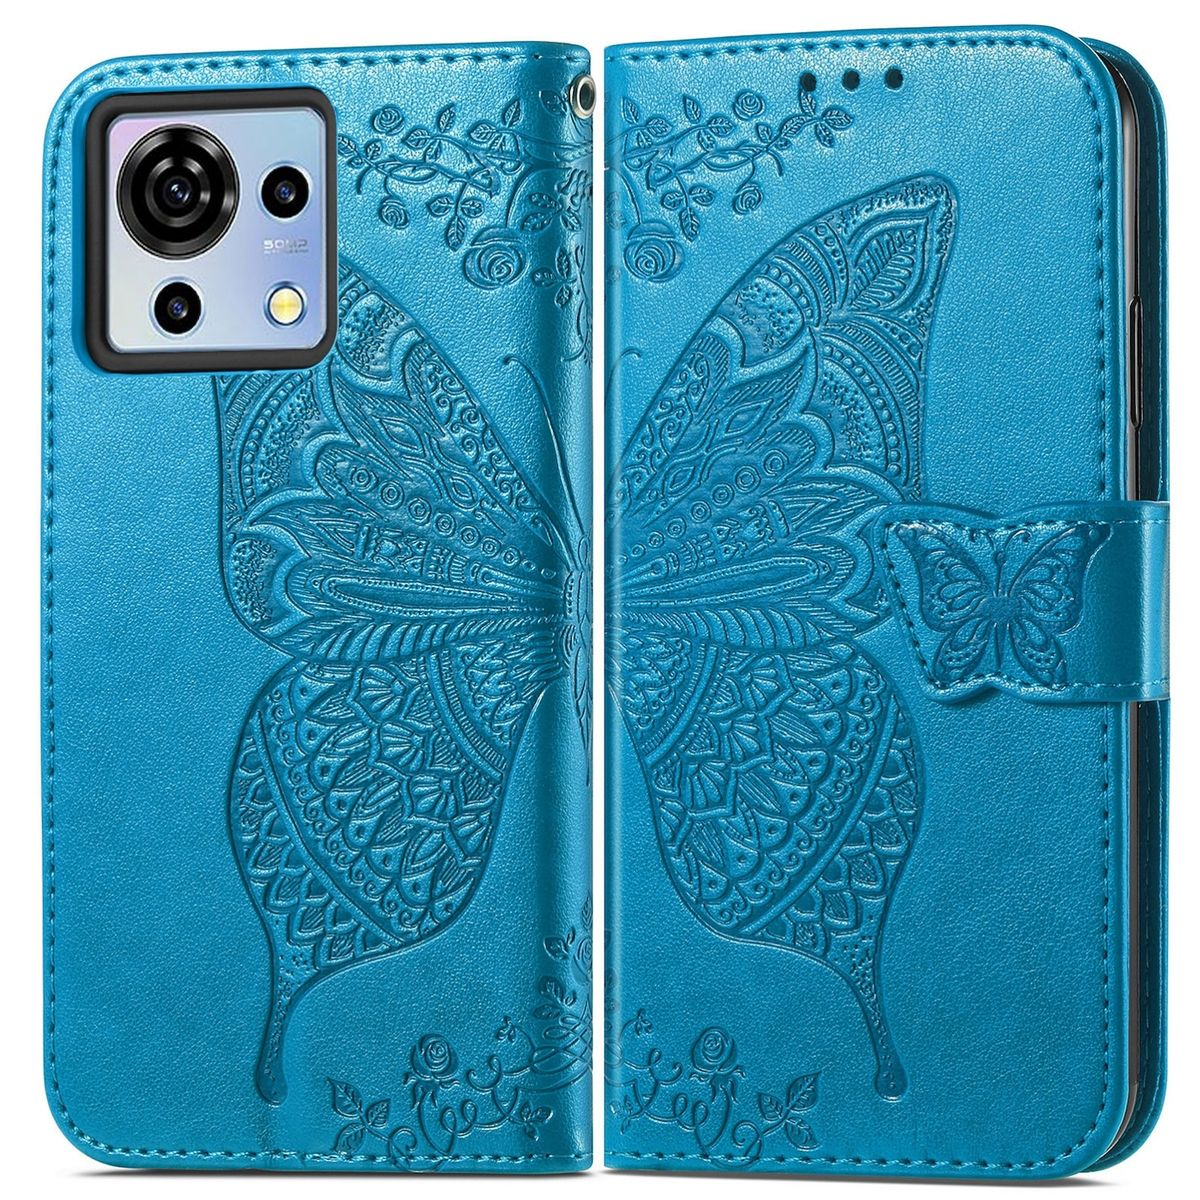 Schmetterling Blade Vita, Design, Book Tasche Wallet V50 Blau WIGENTO Bookcover, ZTE,